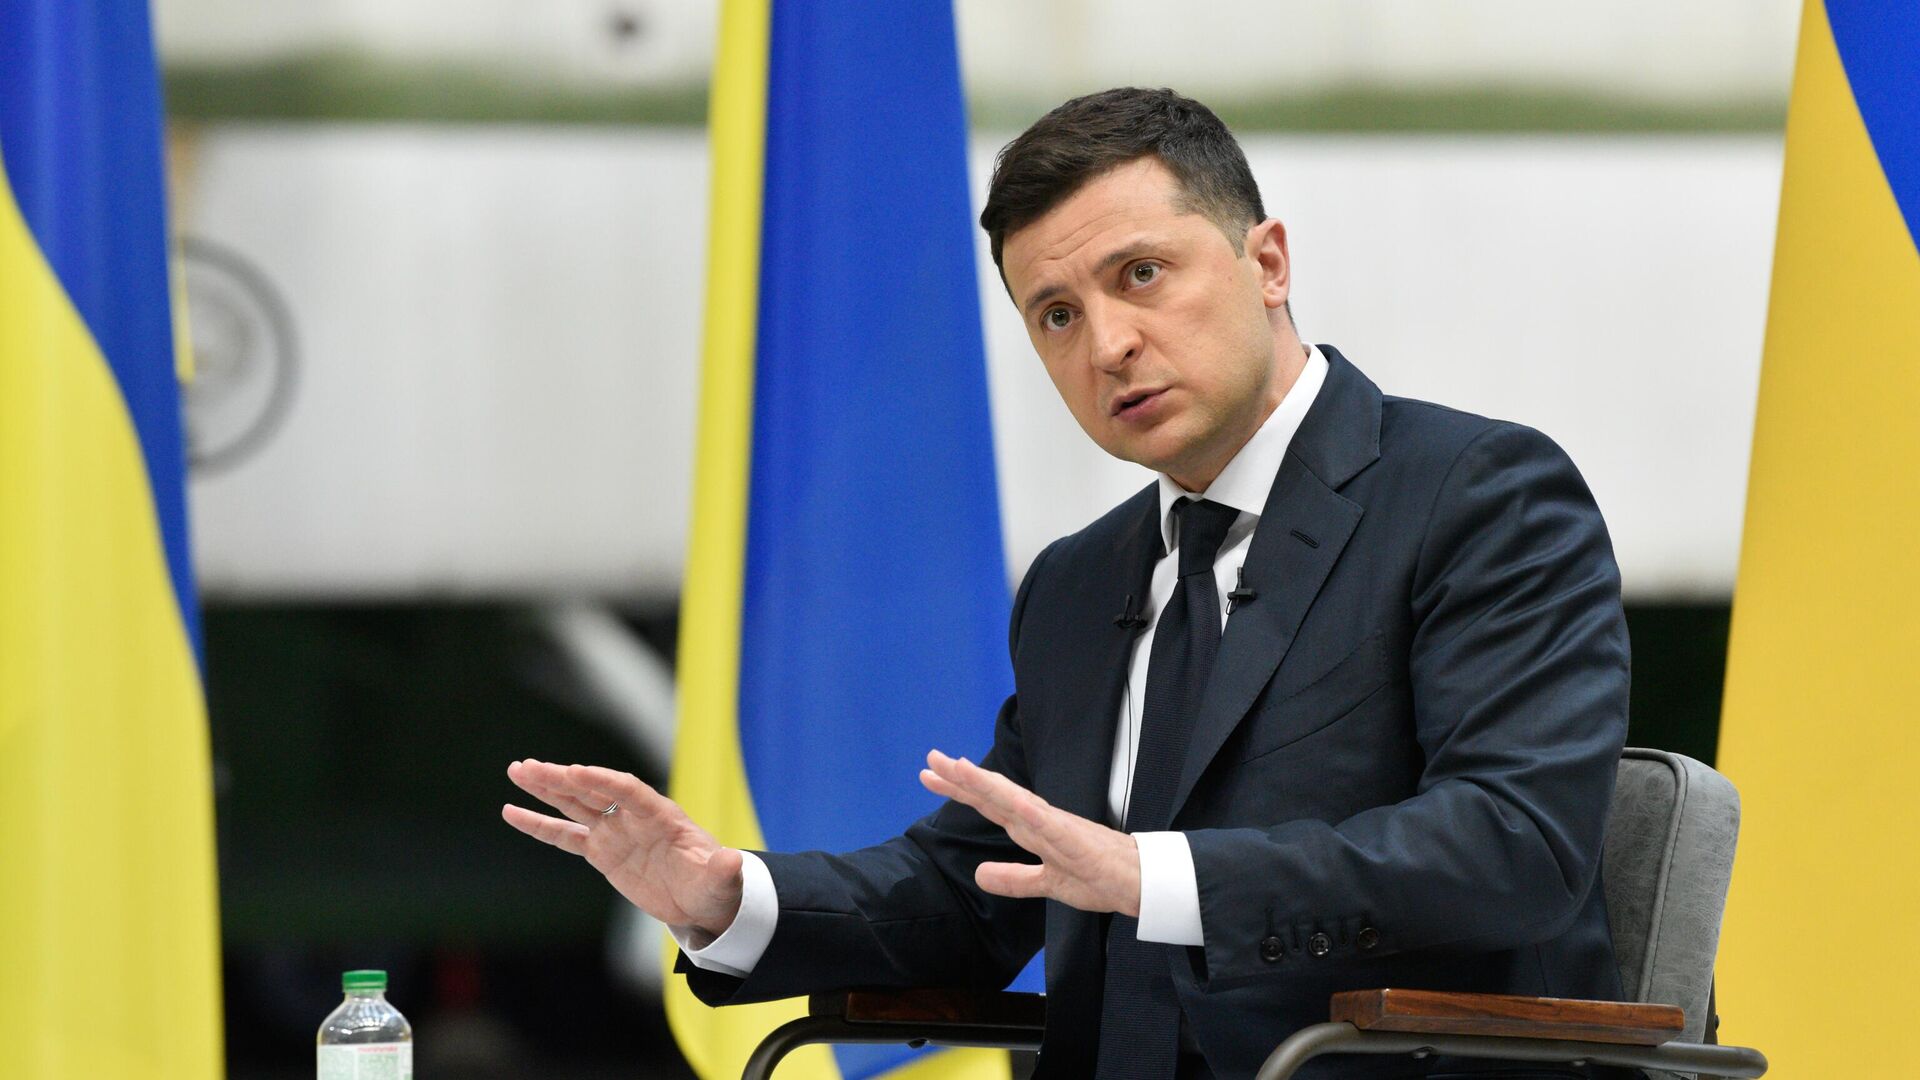 Украинский политолог Таран заявил о попадании Зеленского в ловушку Порошенко